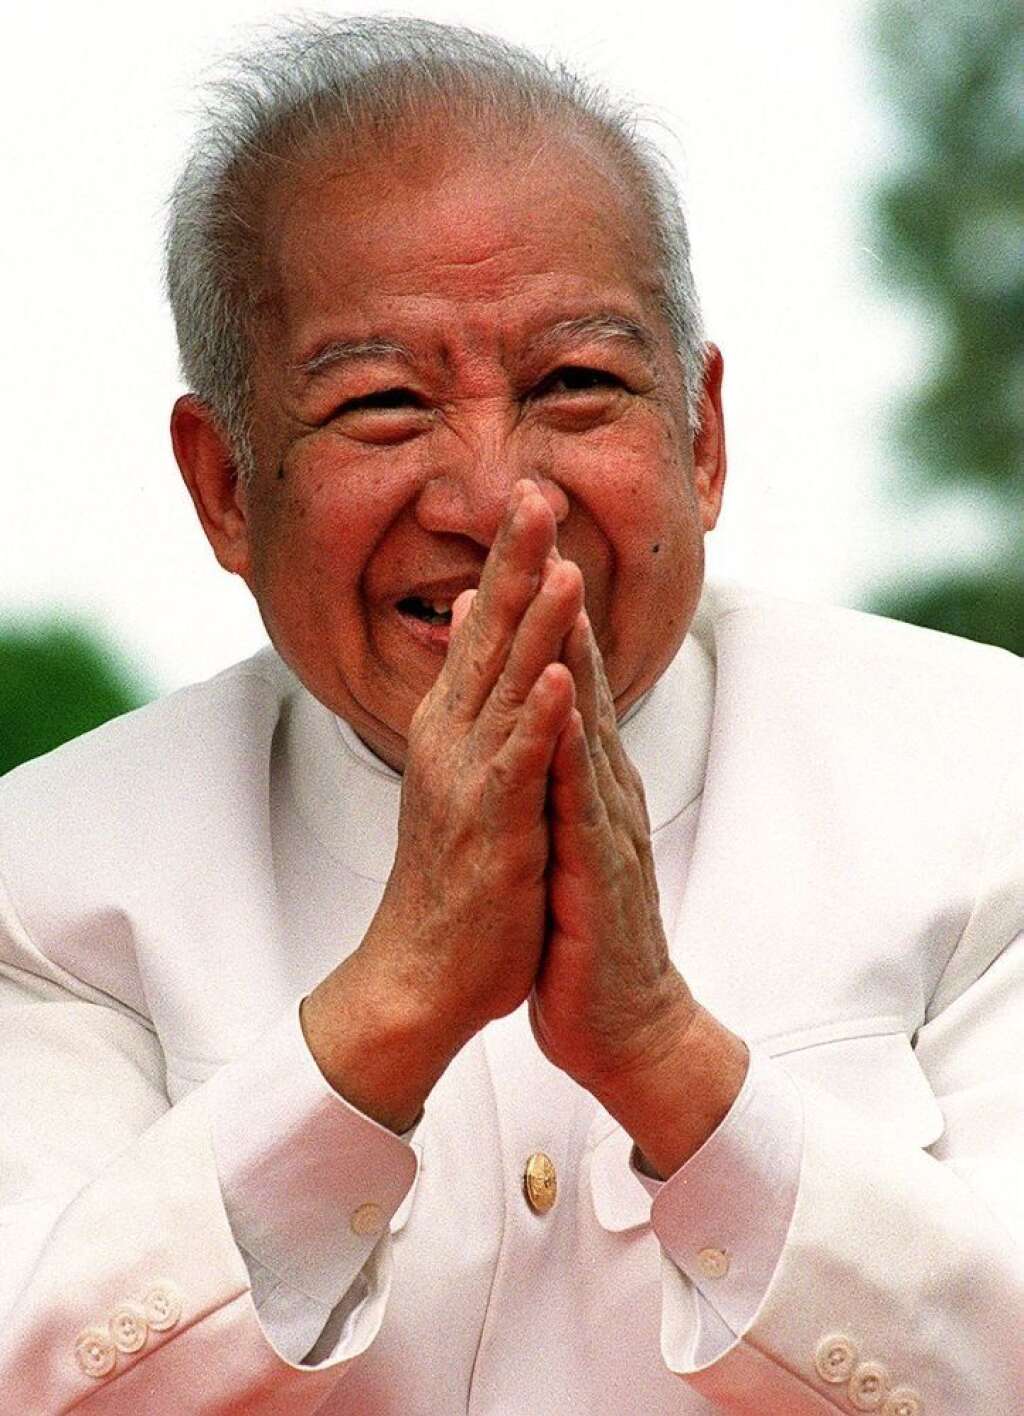 Norodom Sihanouk - L'ancien roi du Cambodge est mort à 89 ans. Il était vénéré dans son pays<a href="http://www.huffingtonpost.fr/2012/10/15/ancien-roi-du-cambodge-mort-pekin-89-ans_n_1966036.html"> après être parvenu à maintenir une certaine unité</a> malgré des décennies de guerre.